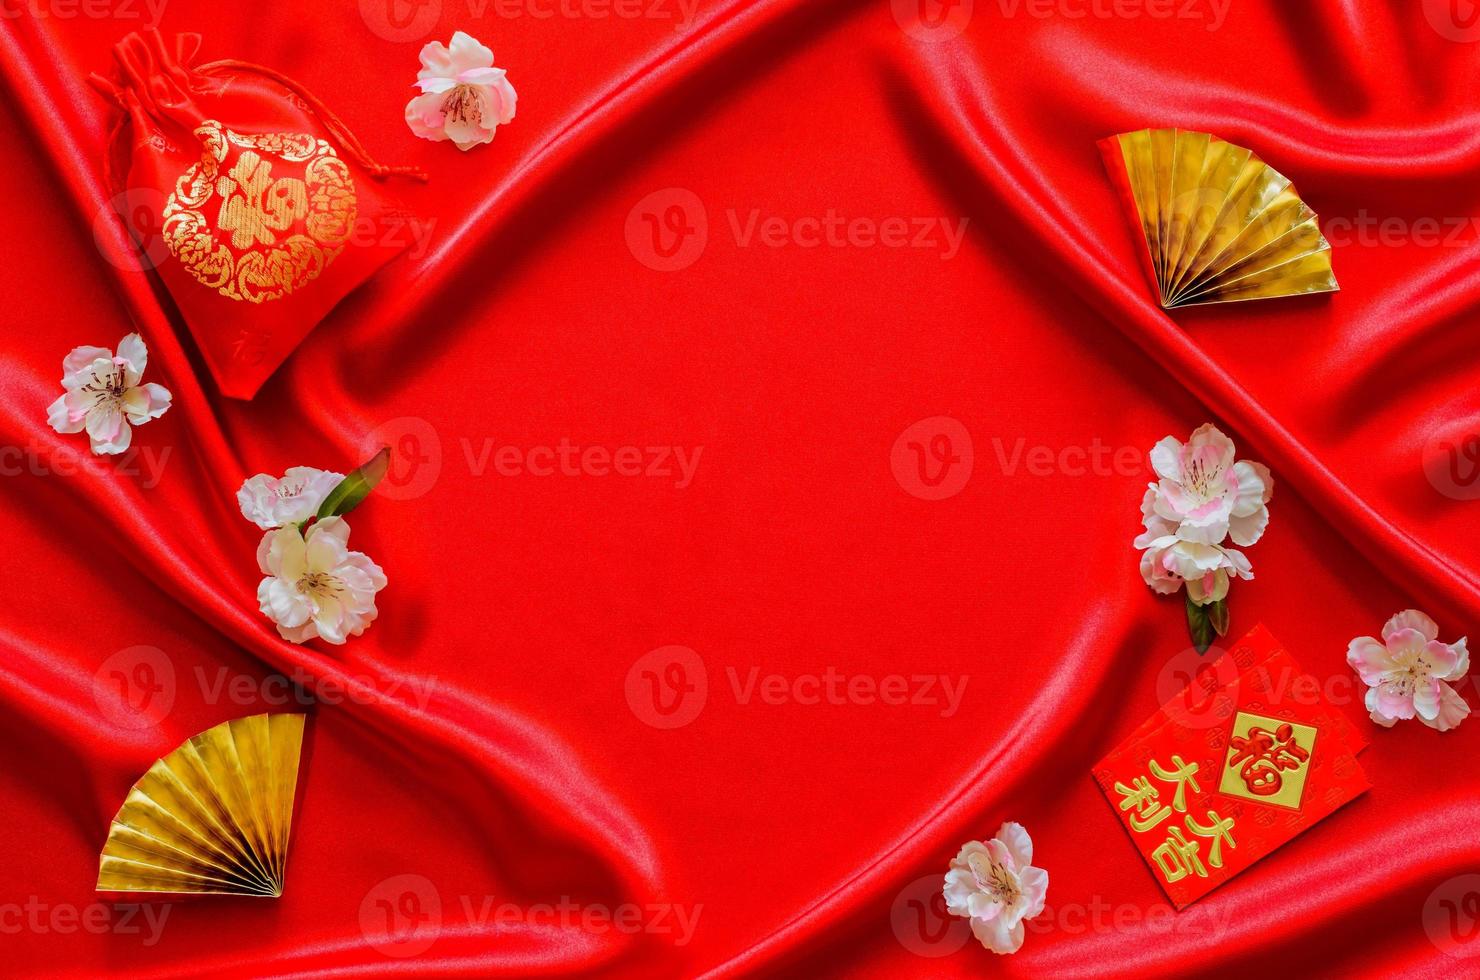 röd satin trasa bakgrund med röd väska ord betyda rikedom och röd kuvert paket eller ang bao ord betyda rikedom, tur- med gyllene fläktar för kinesisk ny år begrepp. foto